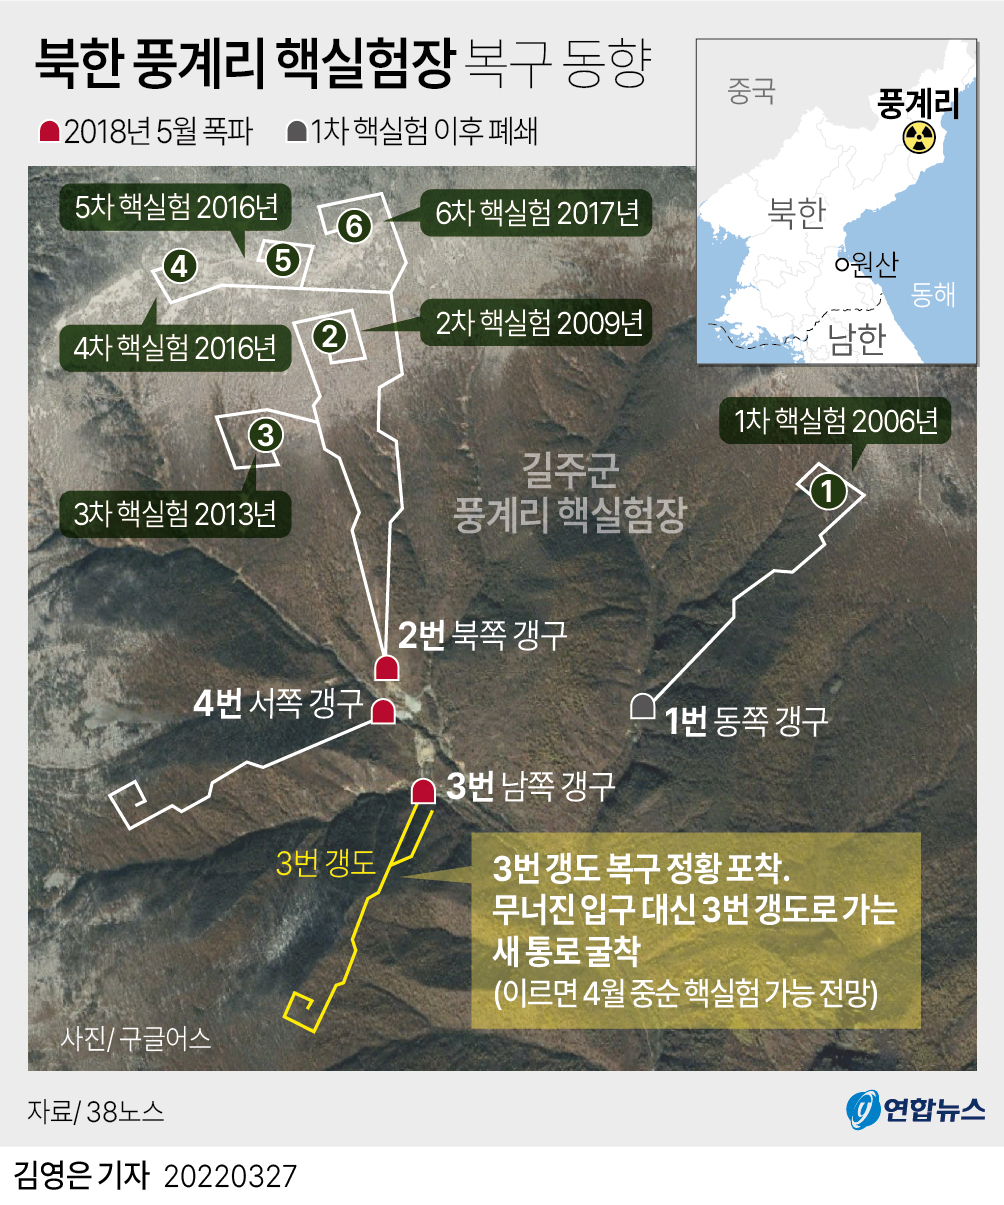 [그래픽] 북한 풍계리 핵실험장 복구 동향